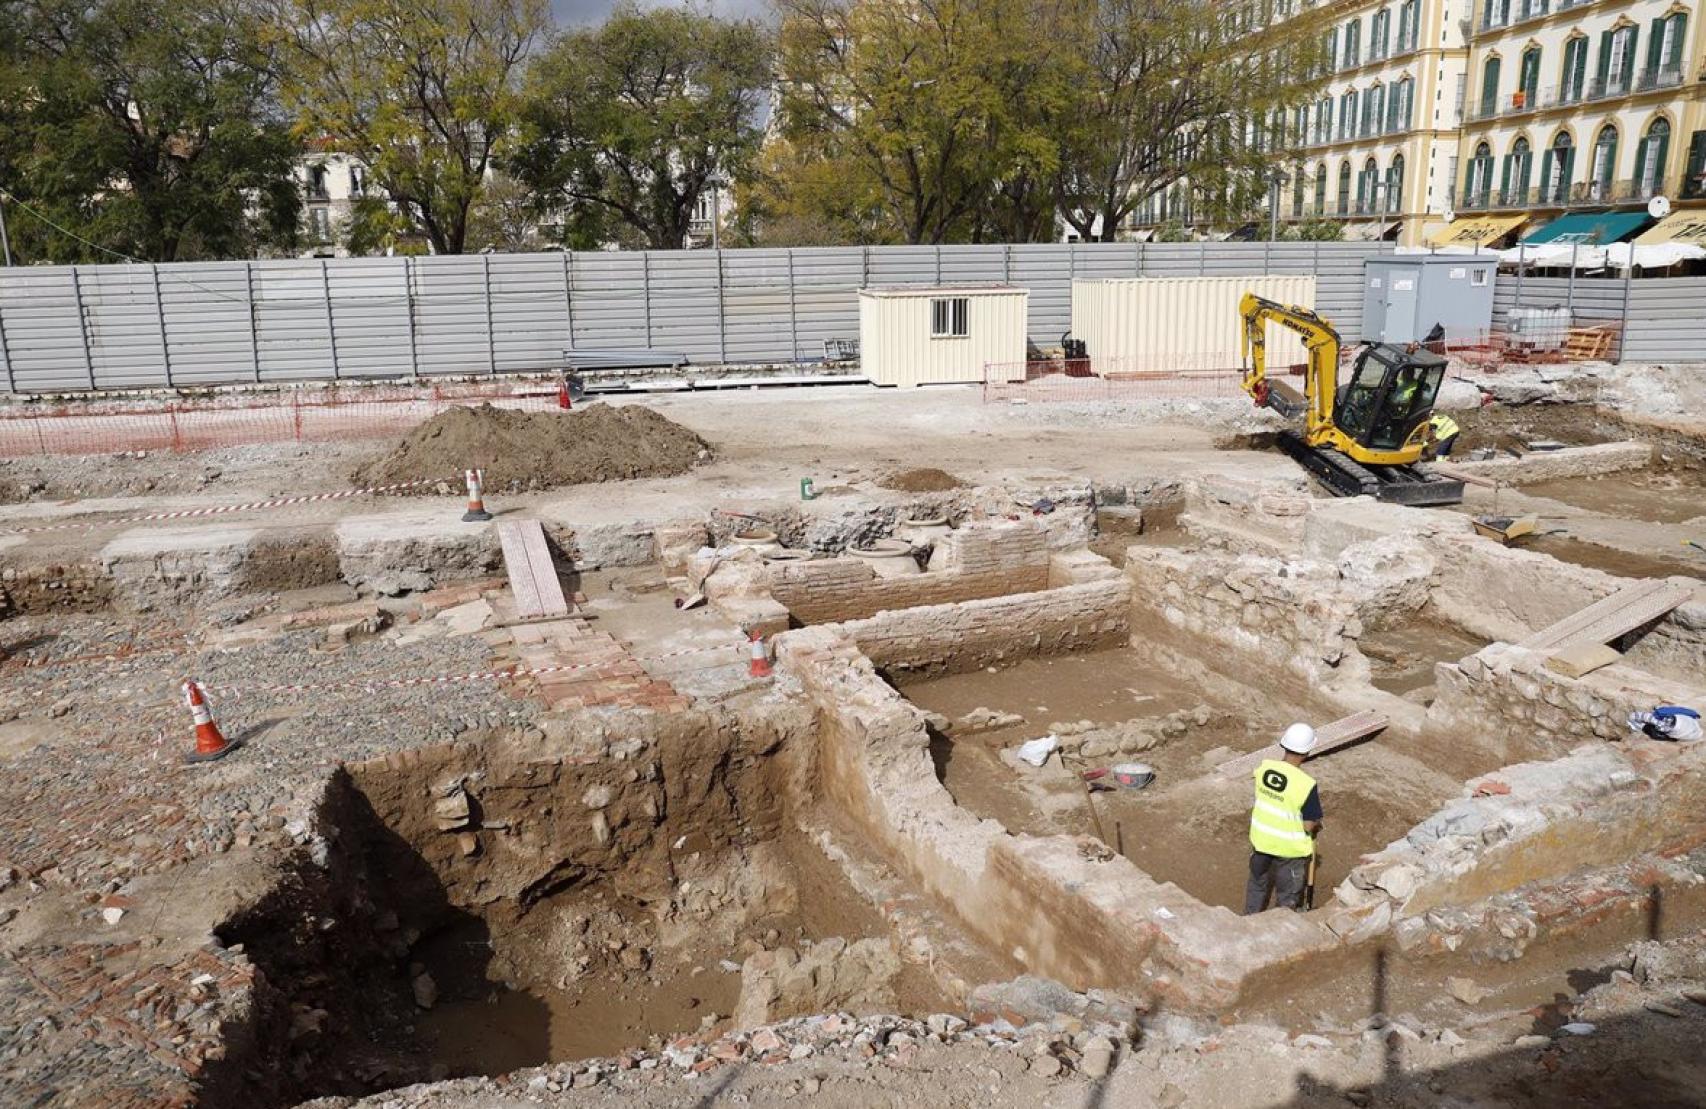 Imagen de las excavaciones arqueológicas realizadas en la parcela de los antiguos cines Astoria y Victoria, en Málaga.